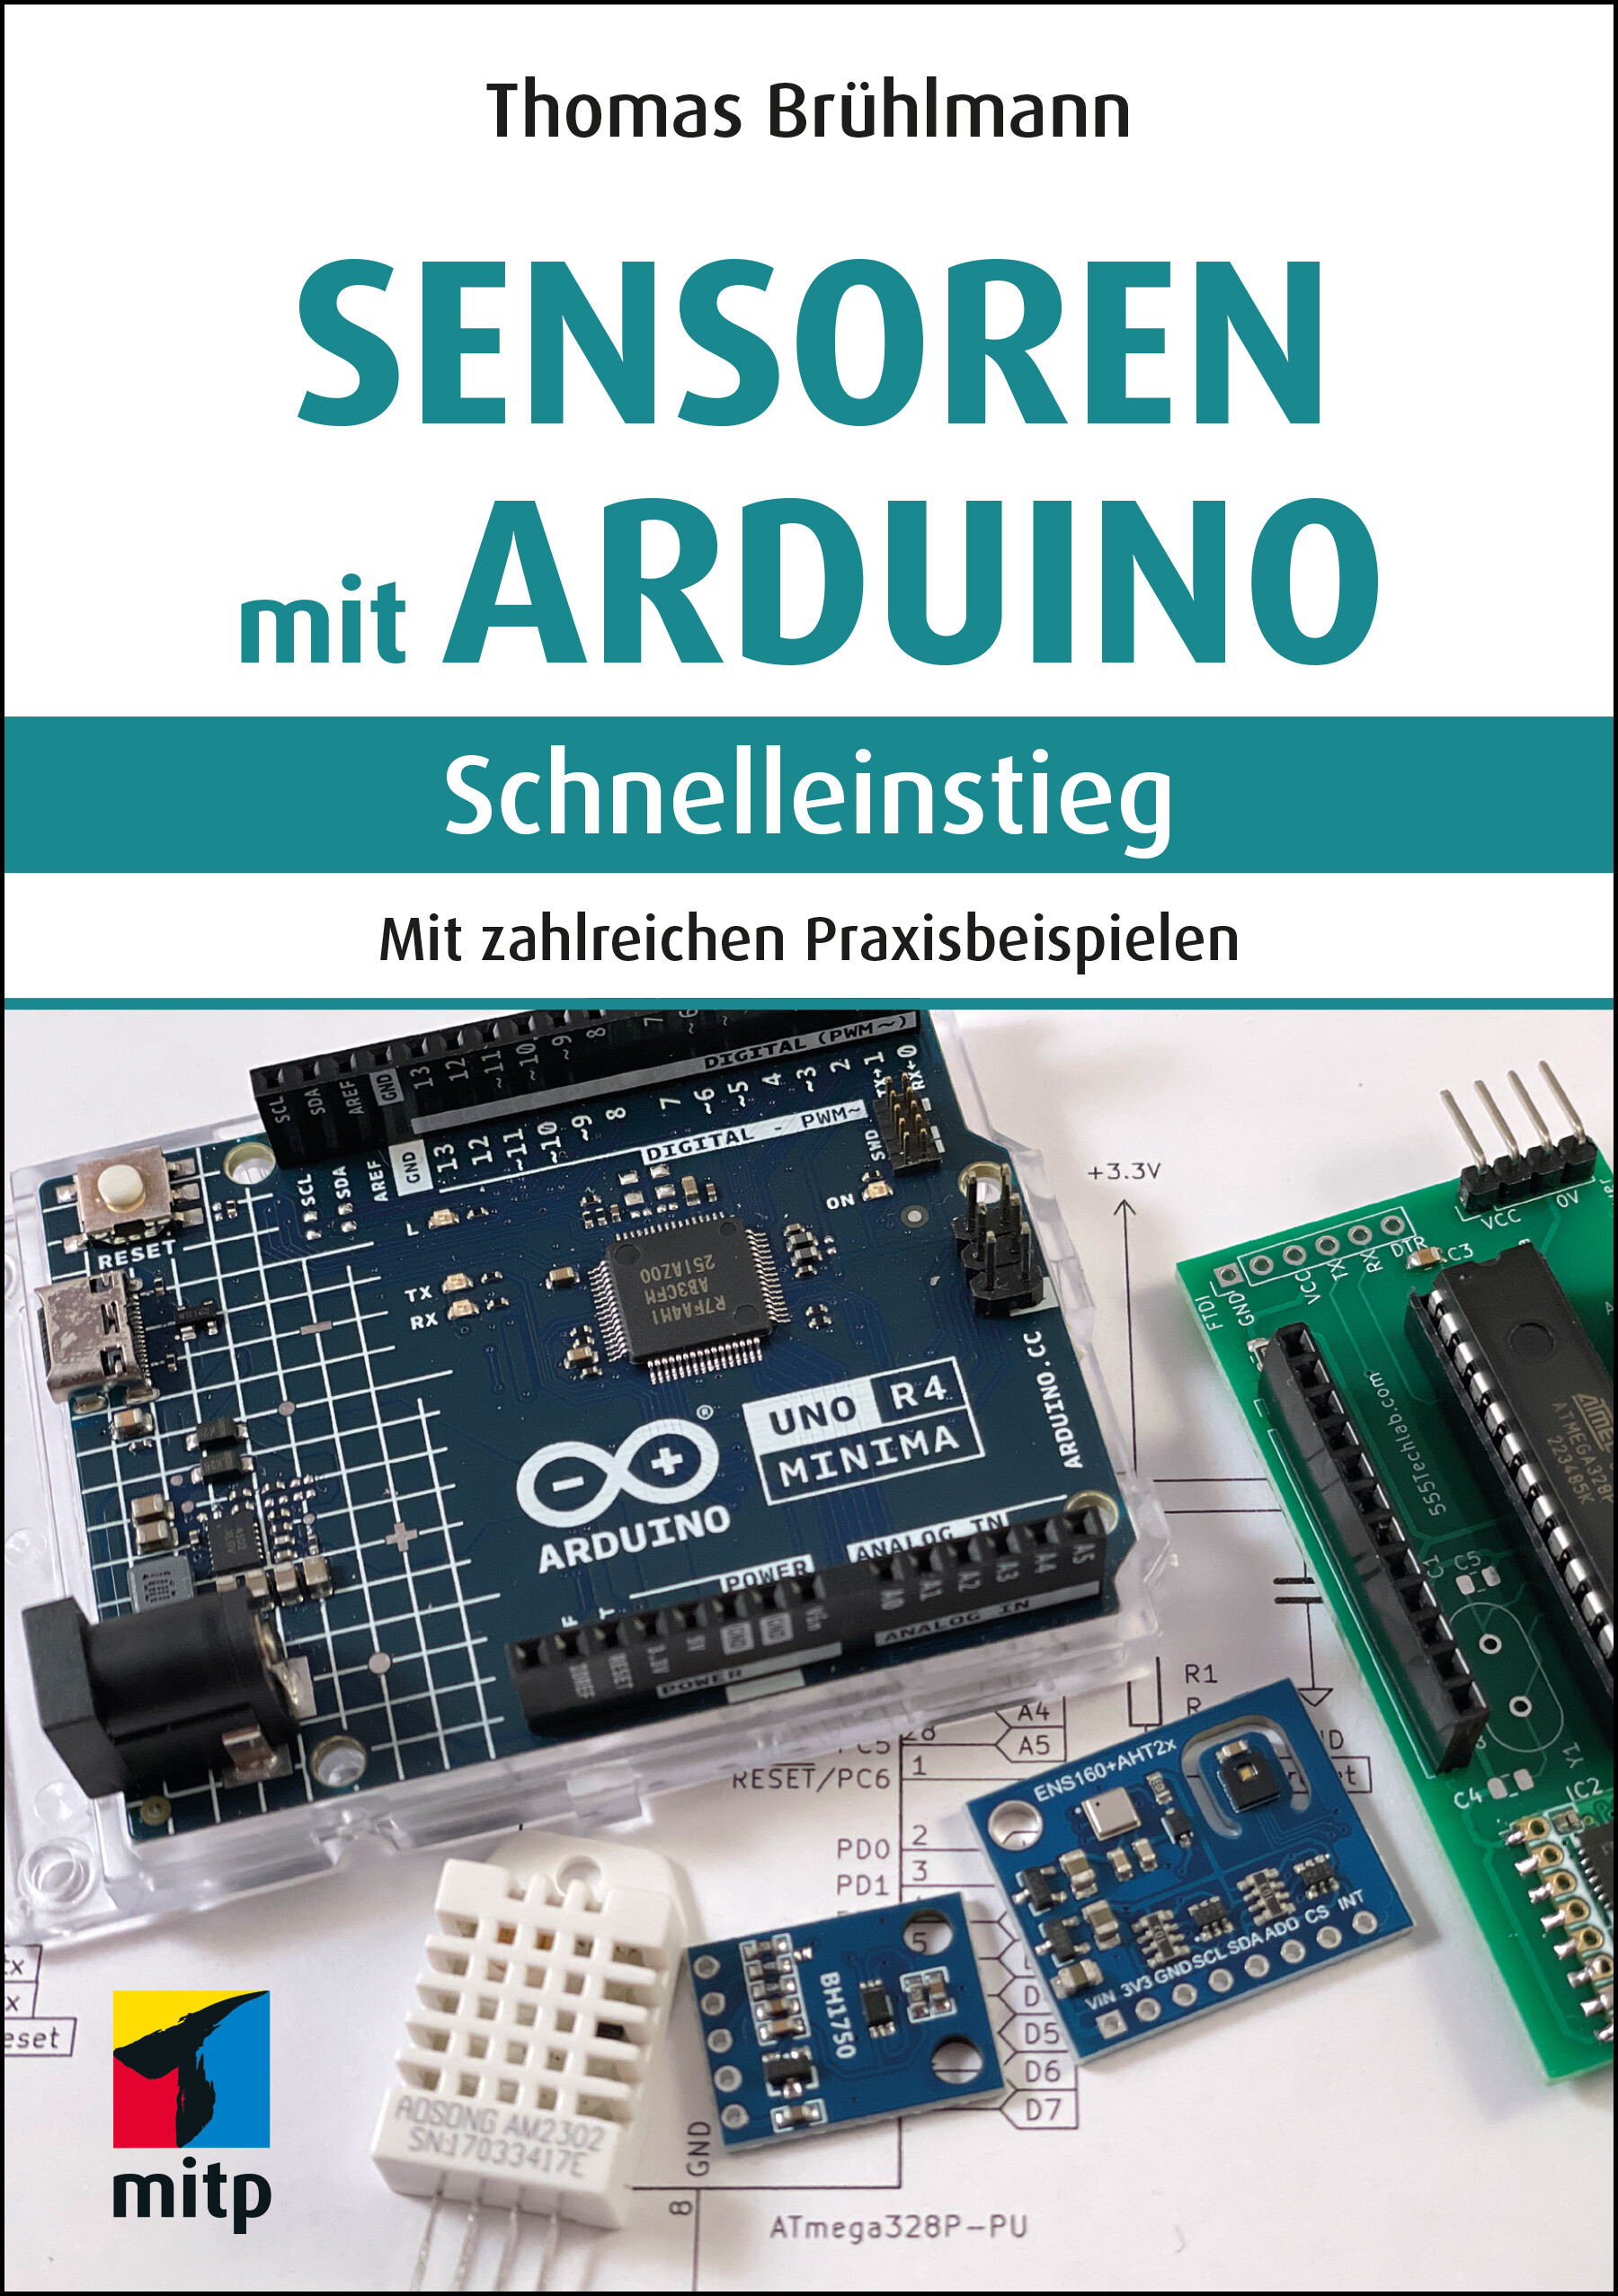 Sensoren mit Arduino - Schnelleinstieg